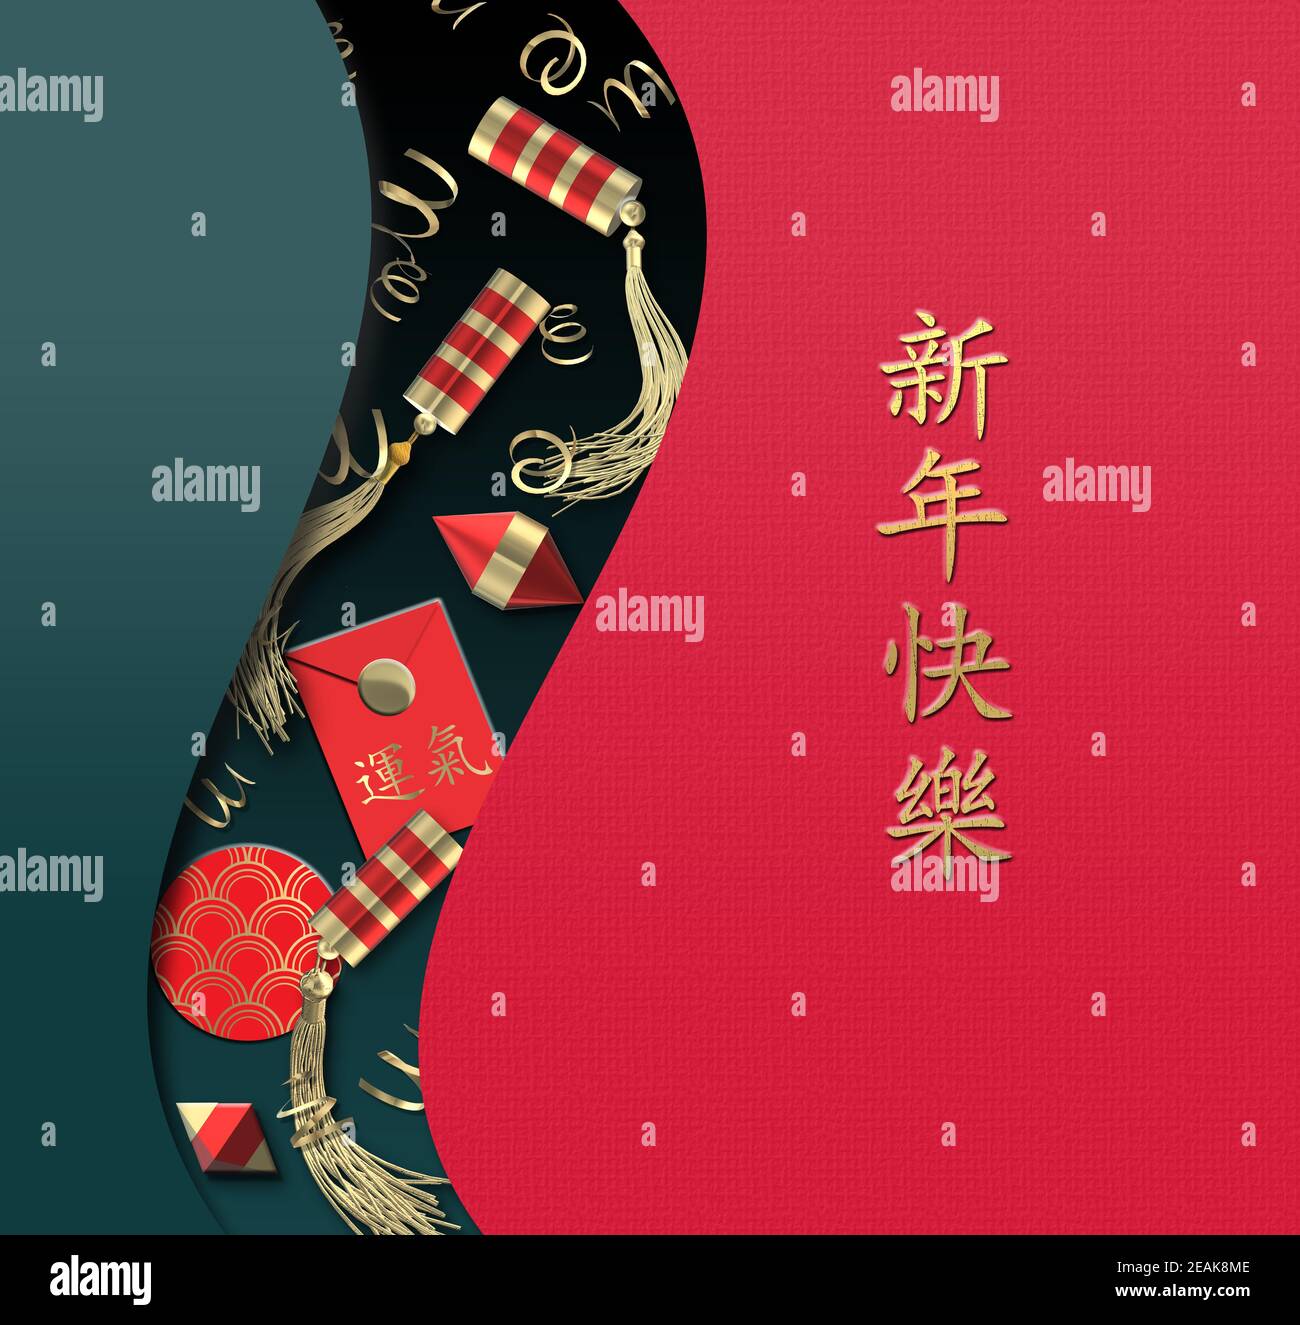 Chinesische Neujahrskarte. Asiatische Wolken und Muster, asiatische Rotgold Cracker, Glückskumschlag mit Text Chinesische Übersetzung Glück. Gold Chinesisch Text glücklich Stockfoto